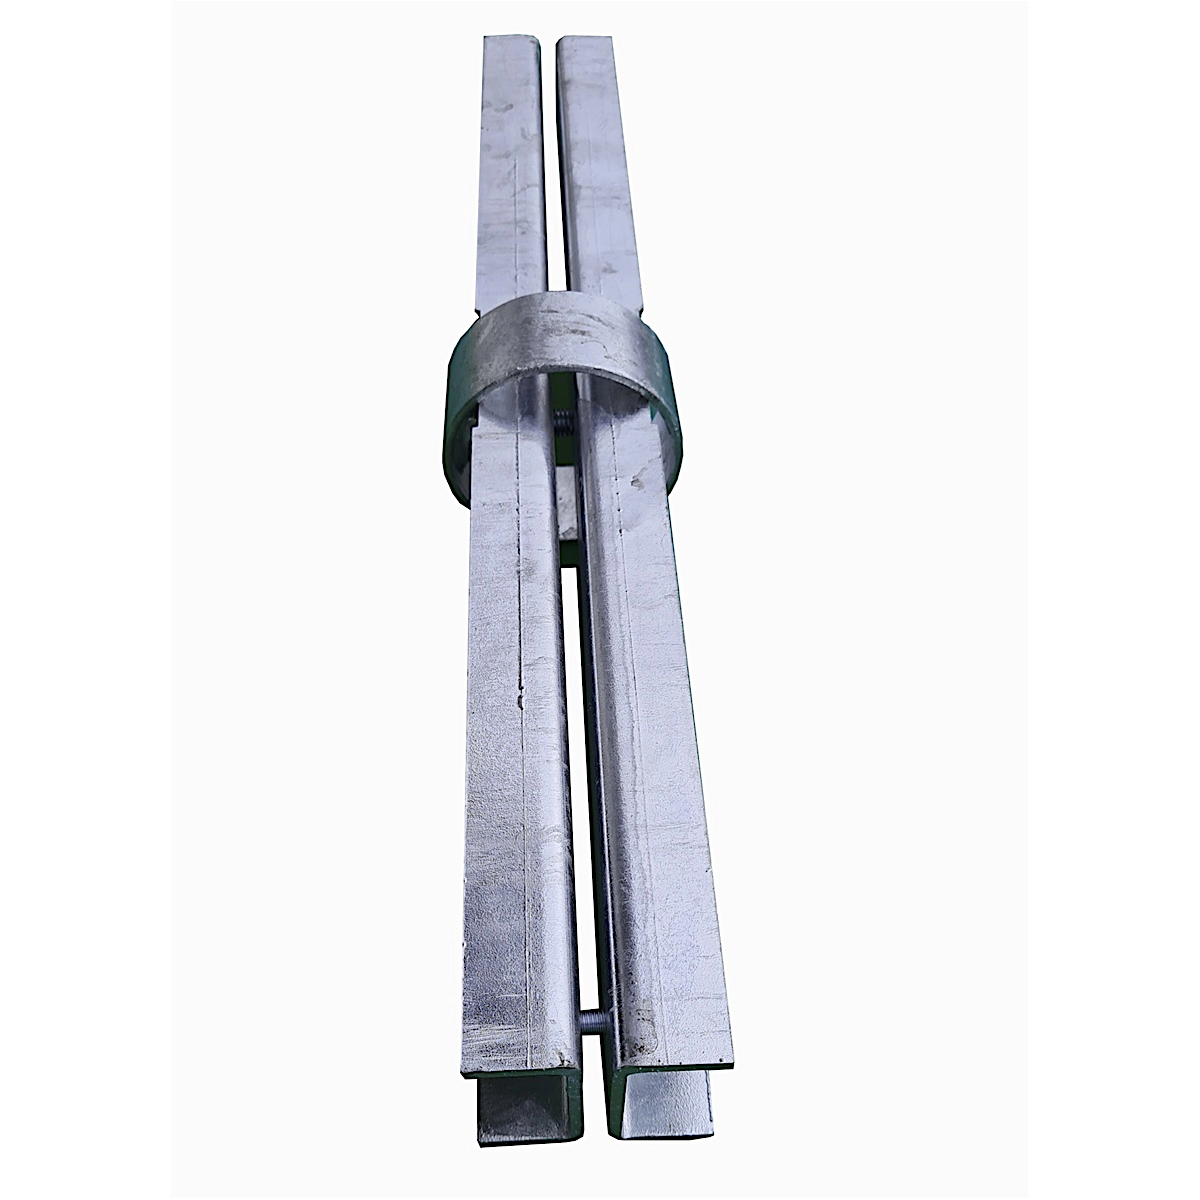 Rohrclip Maxi - Rohrverbinder mit Stahlmittelring, für Pfosten ø 76 mm, L 460 mm